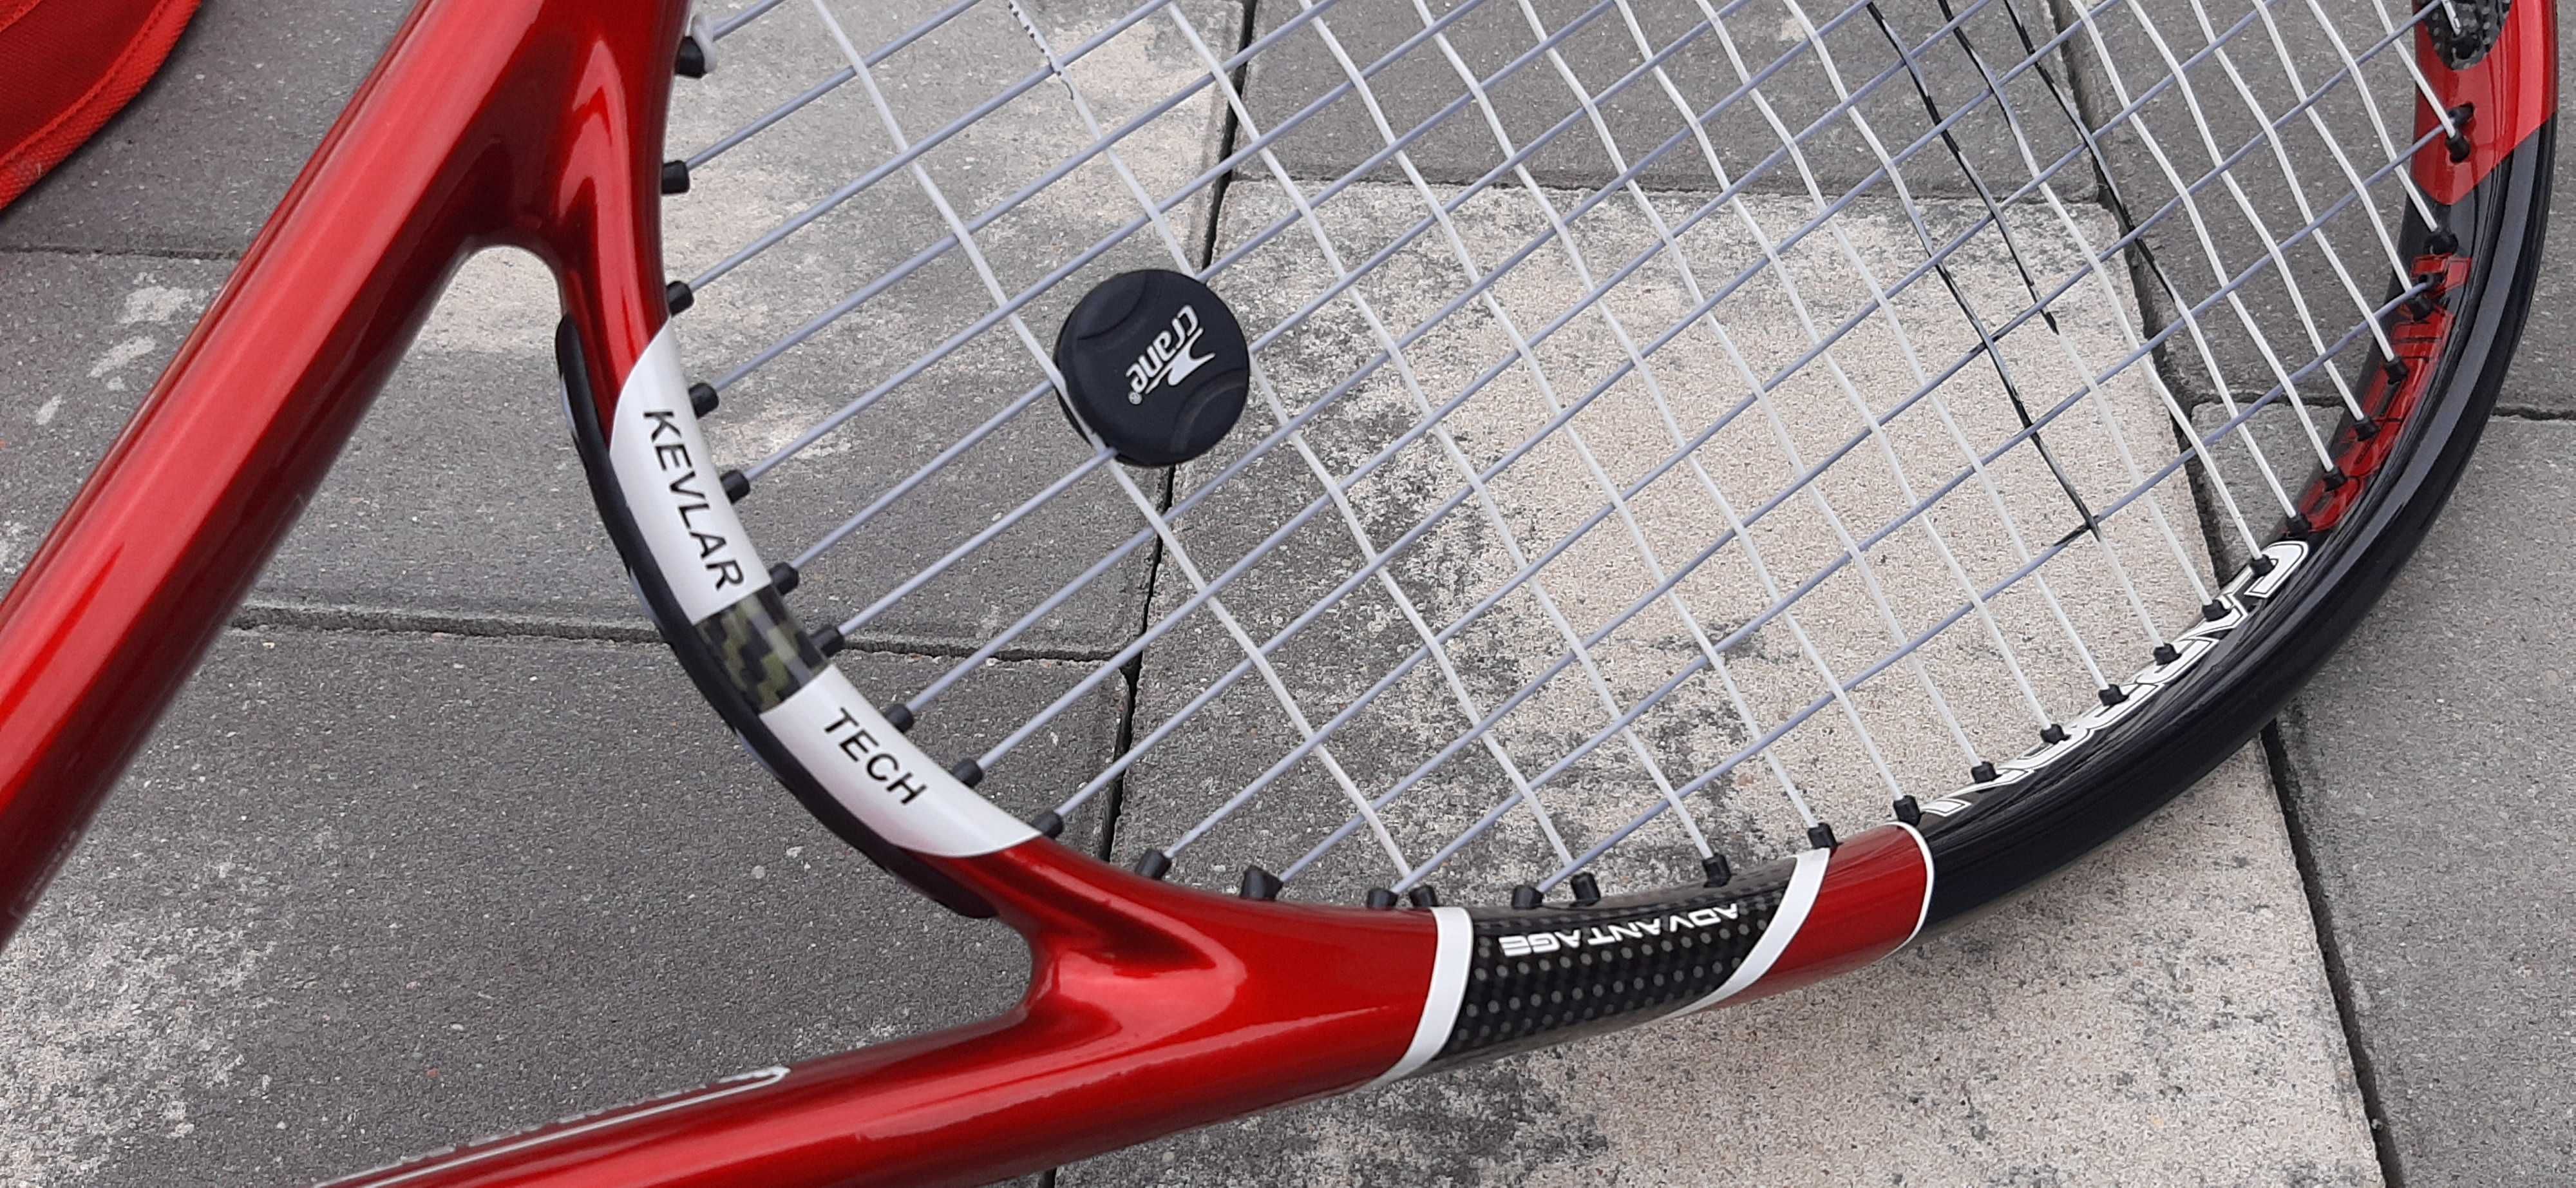 Crane Advantage II Micro Carbon rakieta tenisowa tenis